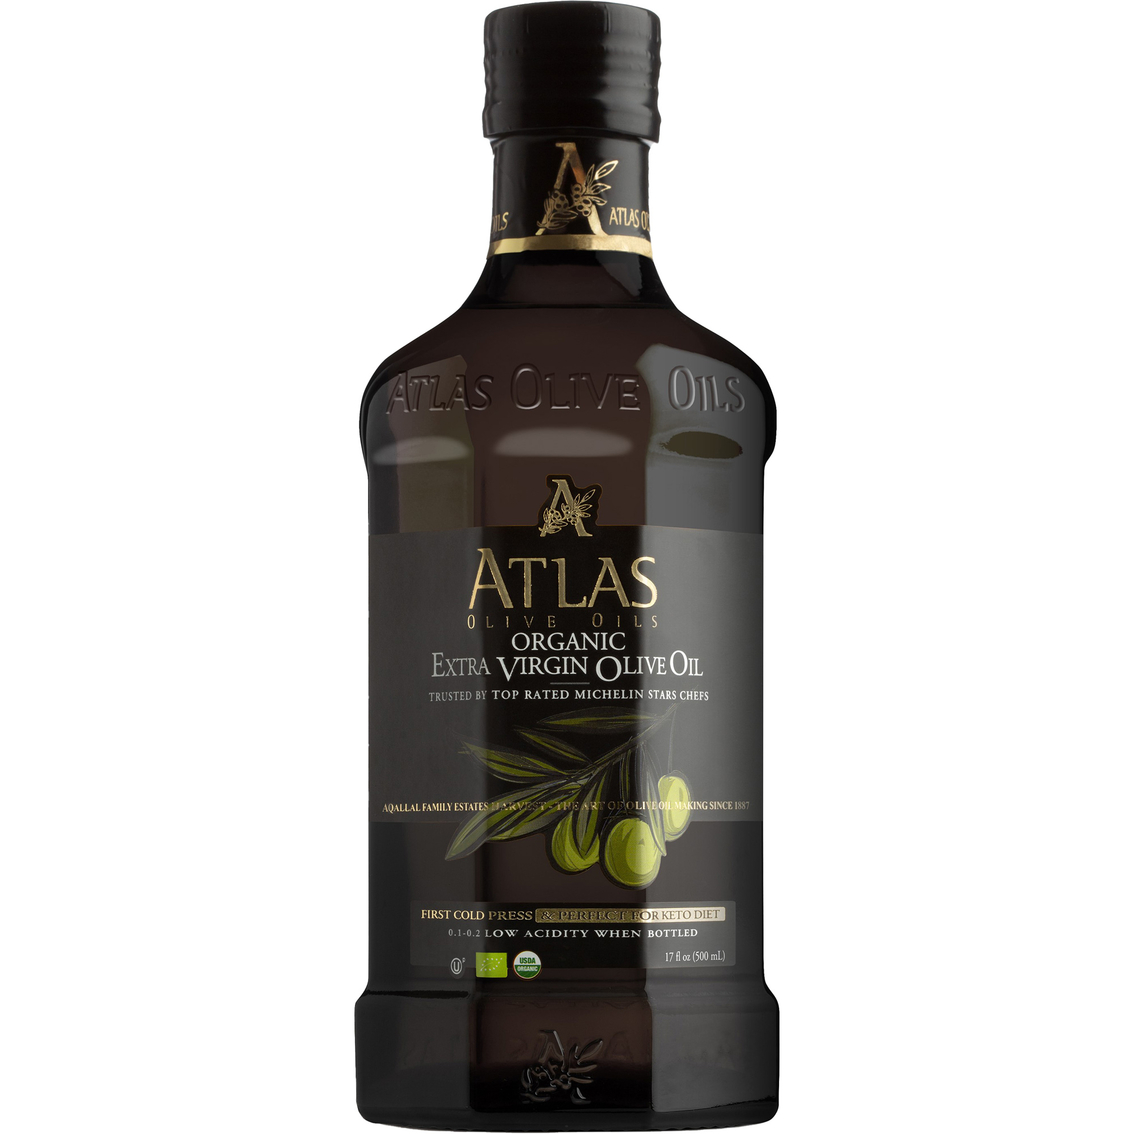 Atlas Organic Extra Virgin Olive Oil Glass Bottles 6 pk., 16.91 oz. each